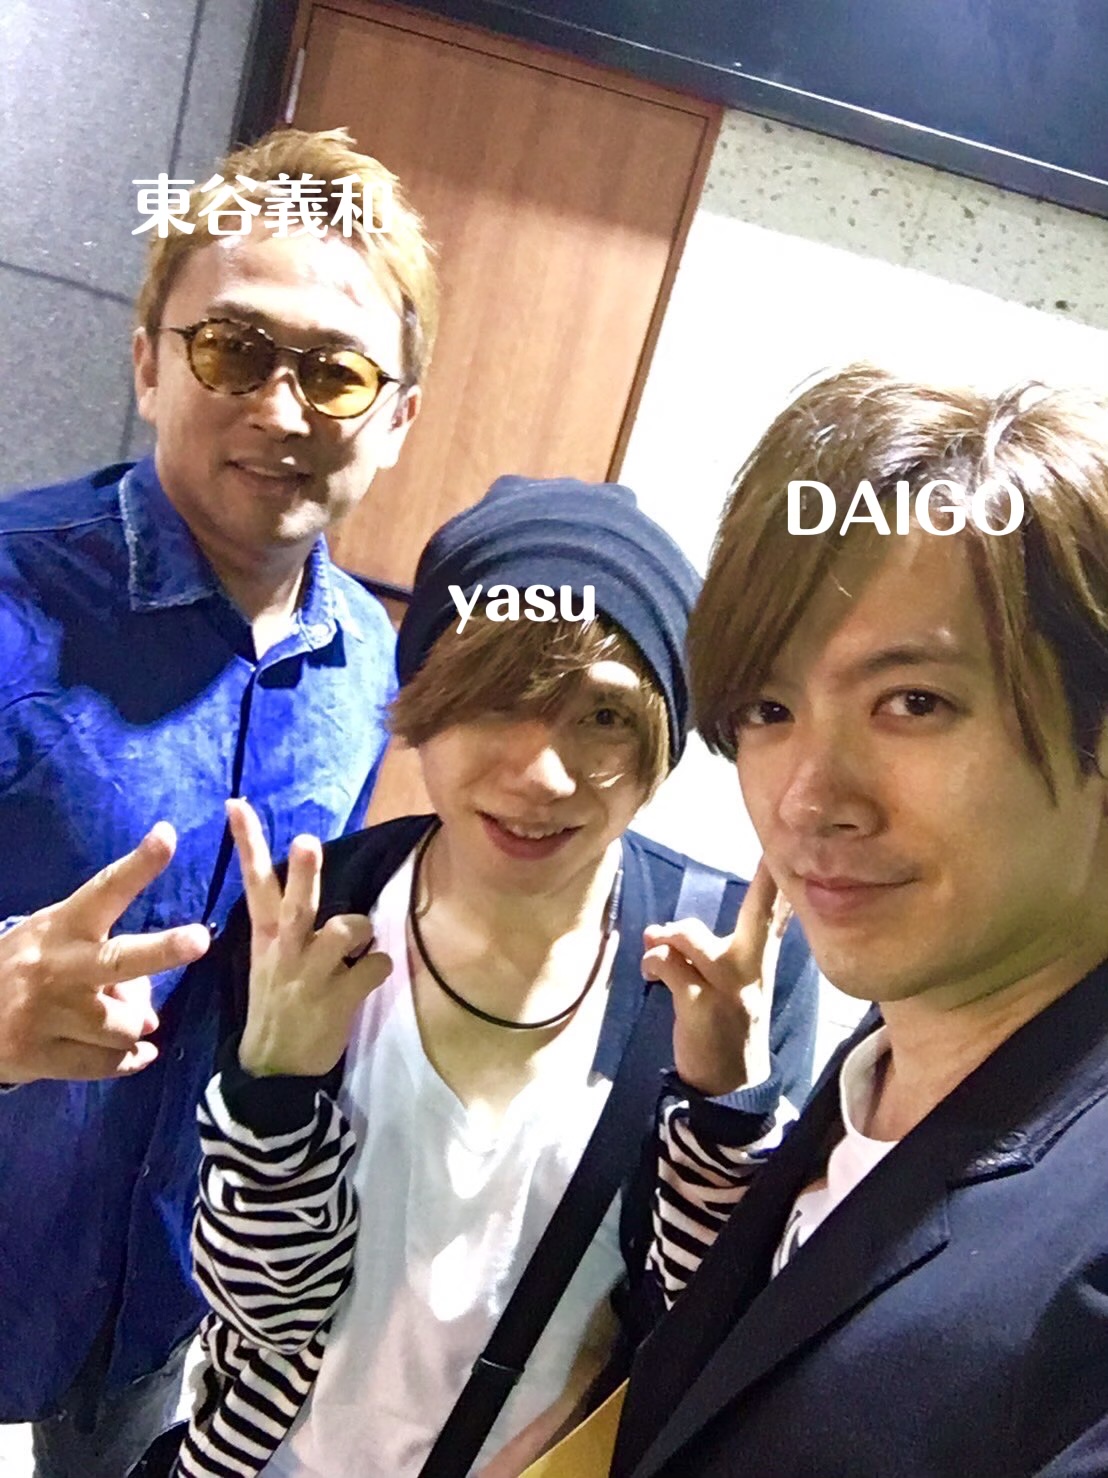 東谷義和 yasu DAIGO